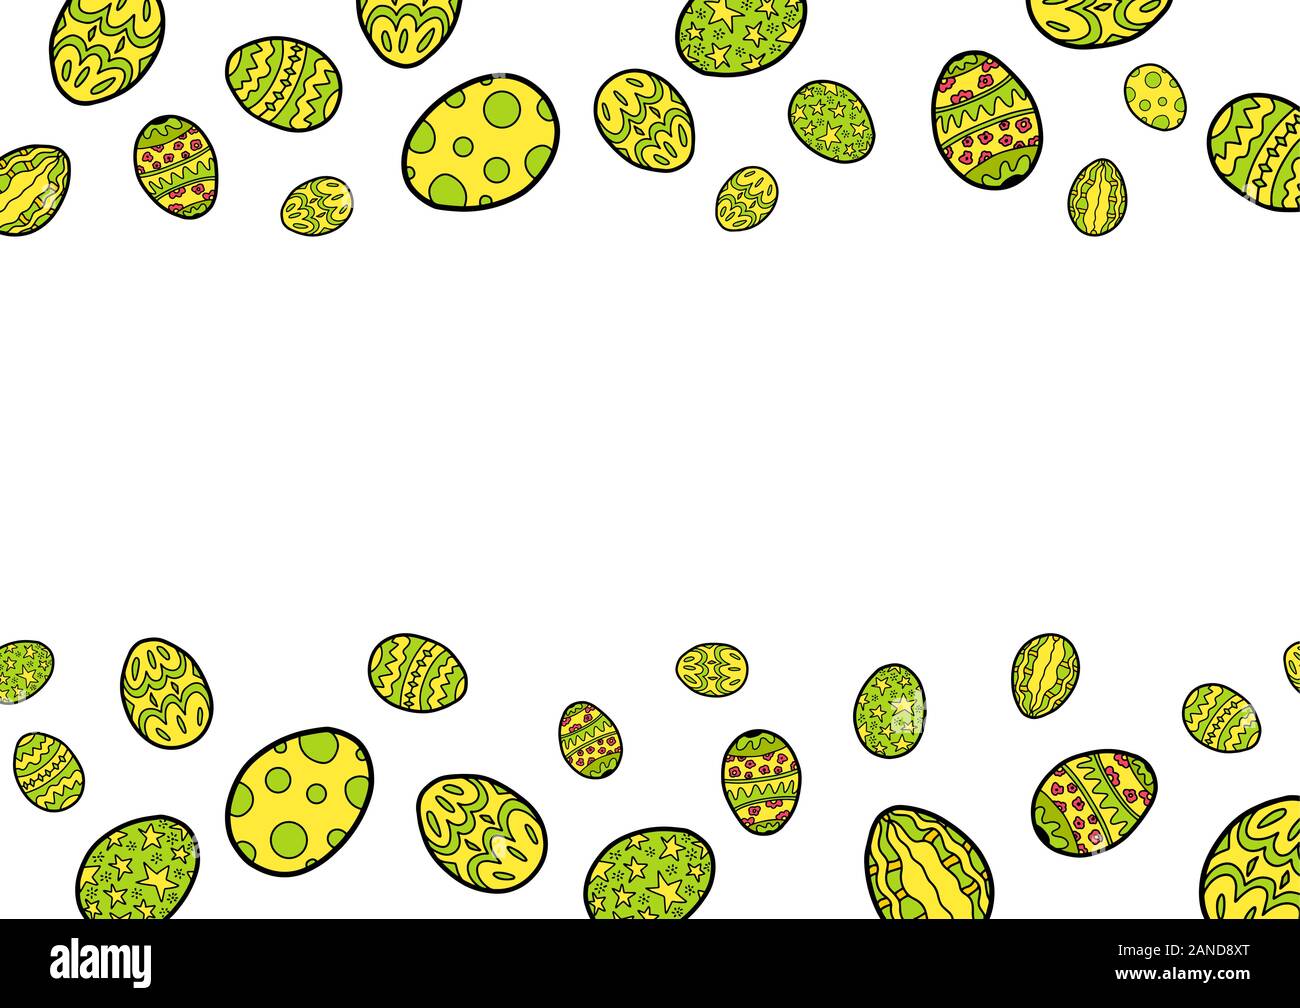 Orizzontale del telaio di pasqua con uova colorate isolati su sfondo bianco. Copia dello spazio. Posto per il testo. Vettore modello di magazzino. Illustrazione Vettoriale